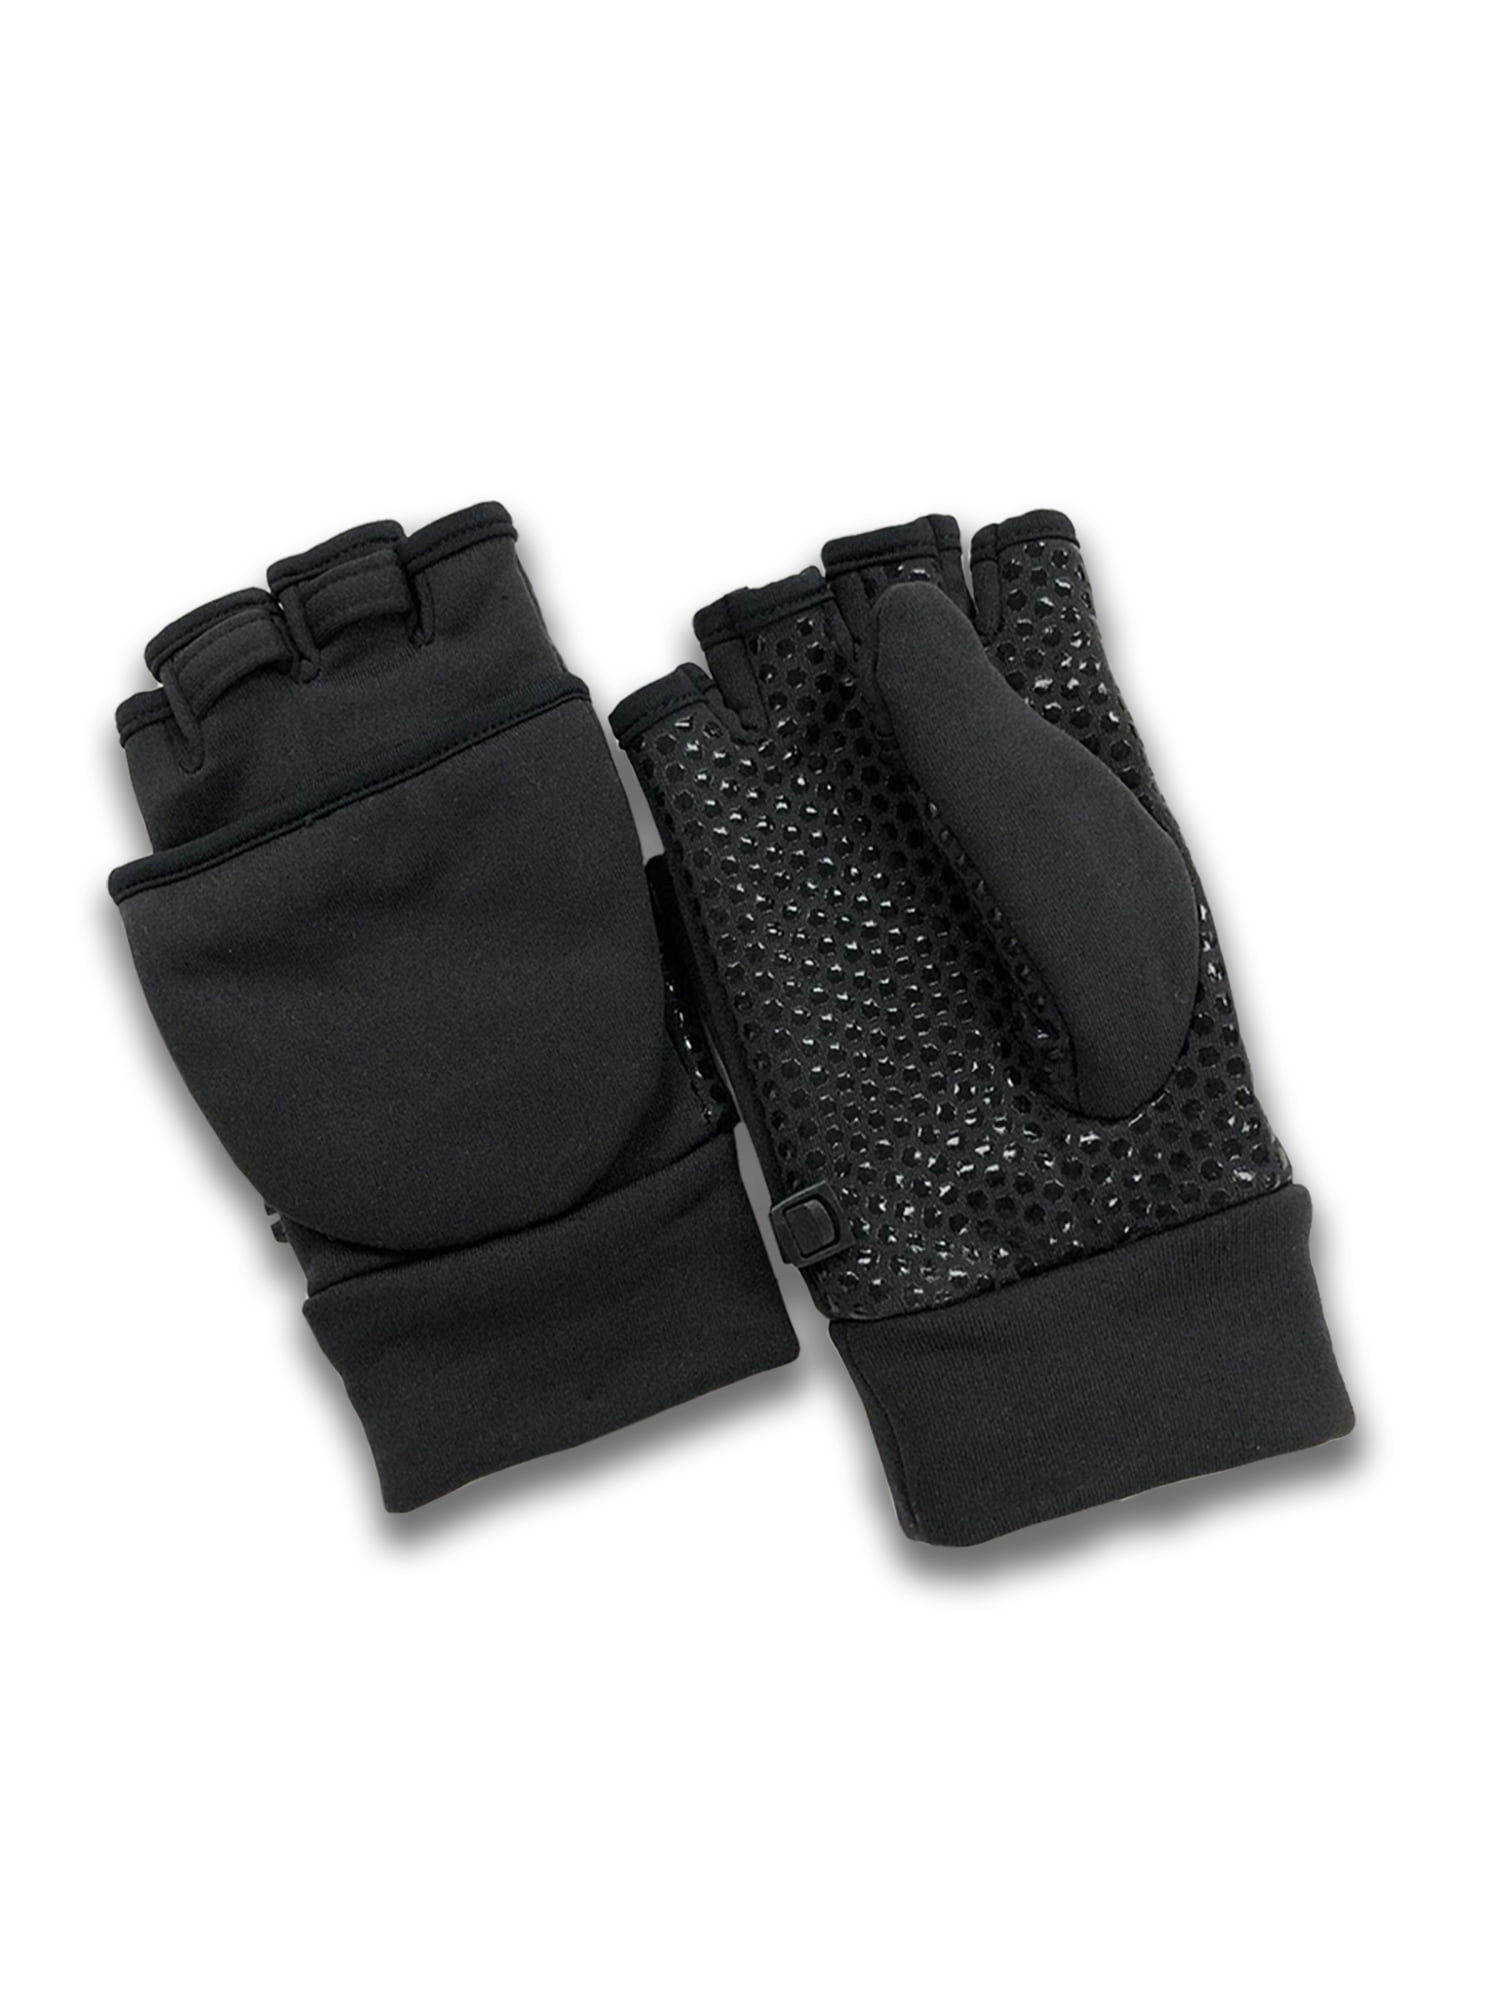 Men's Neoprene Gloves